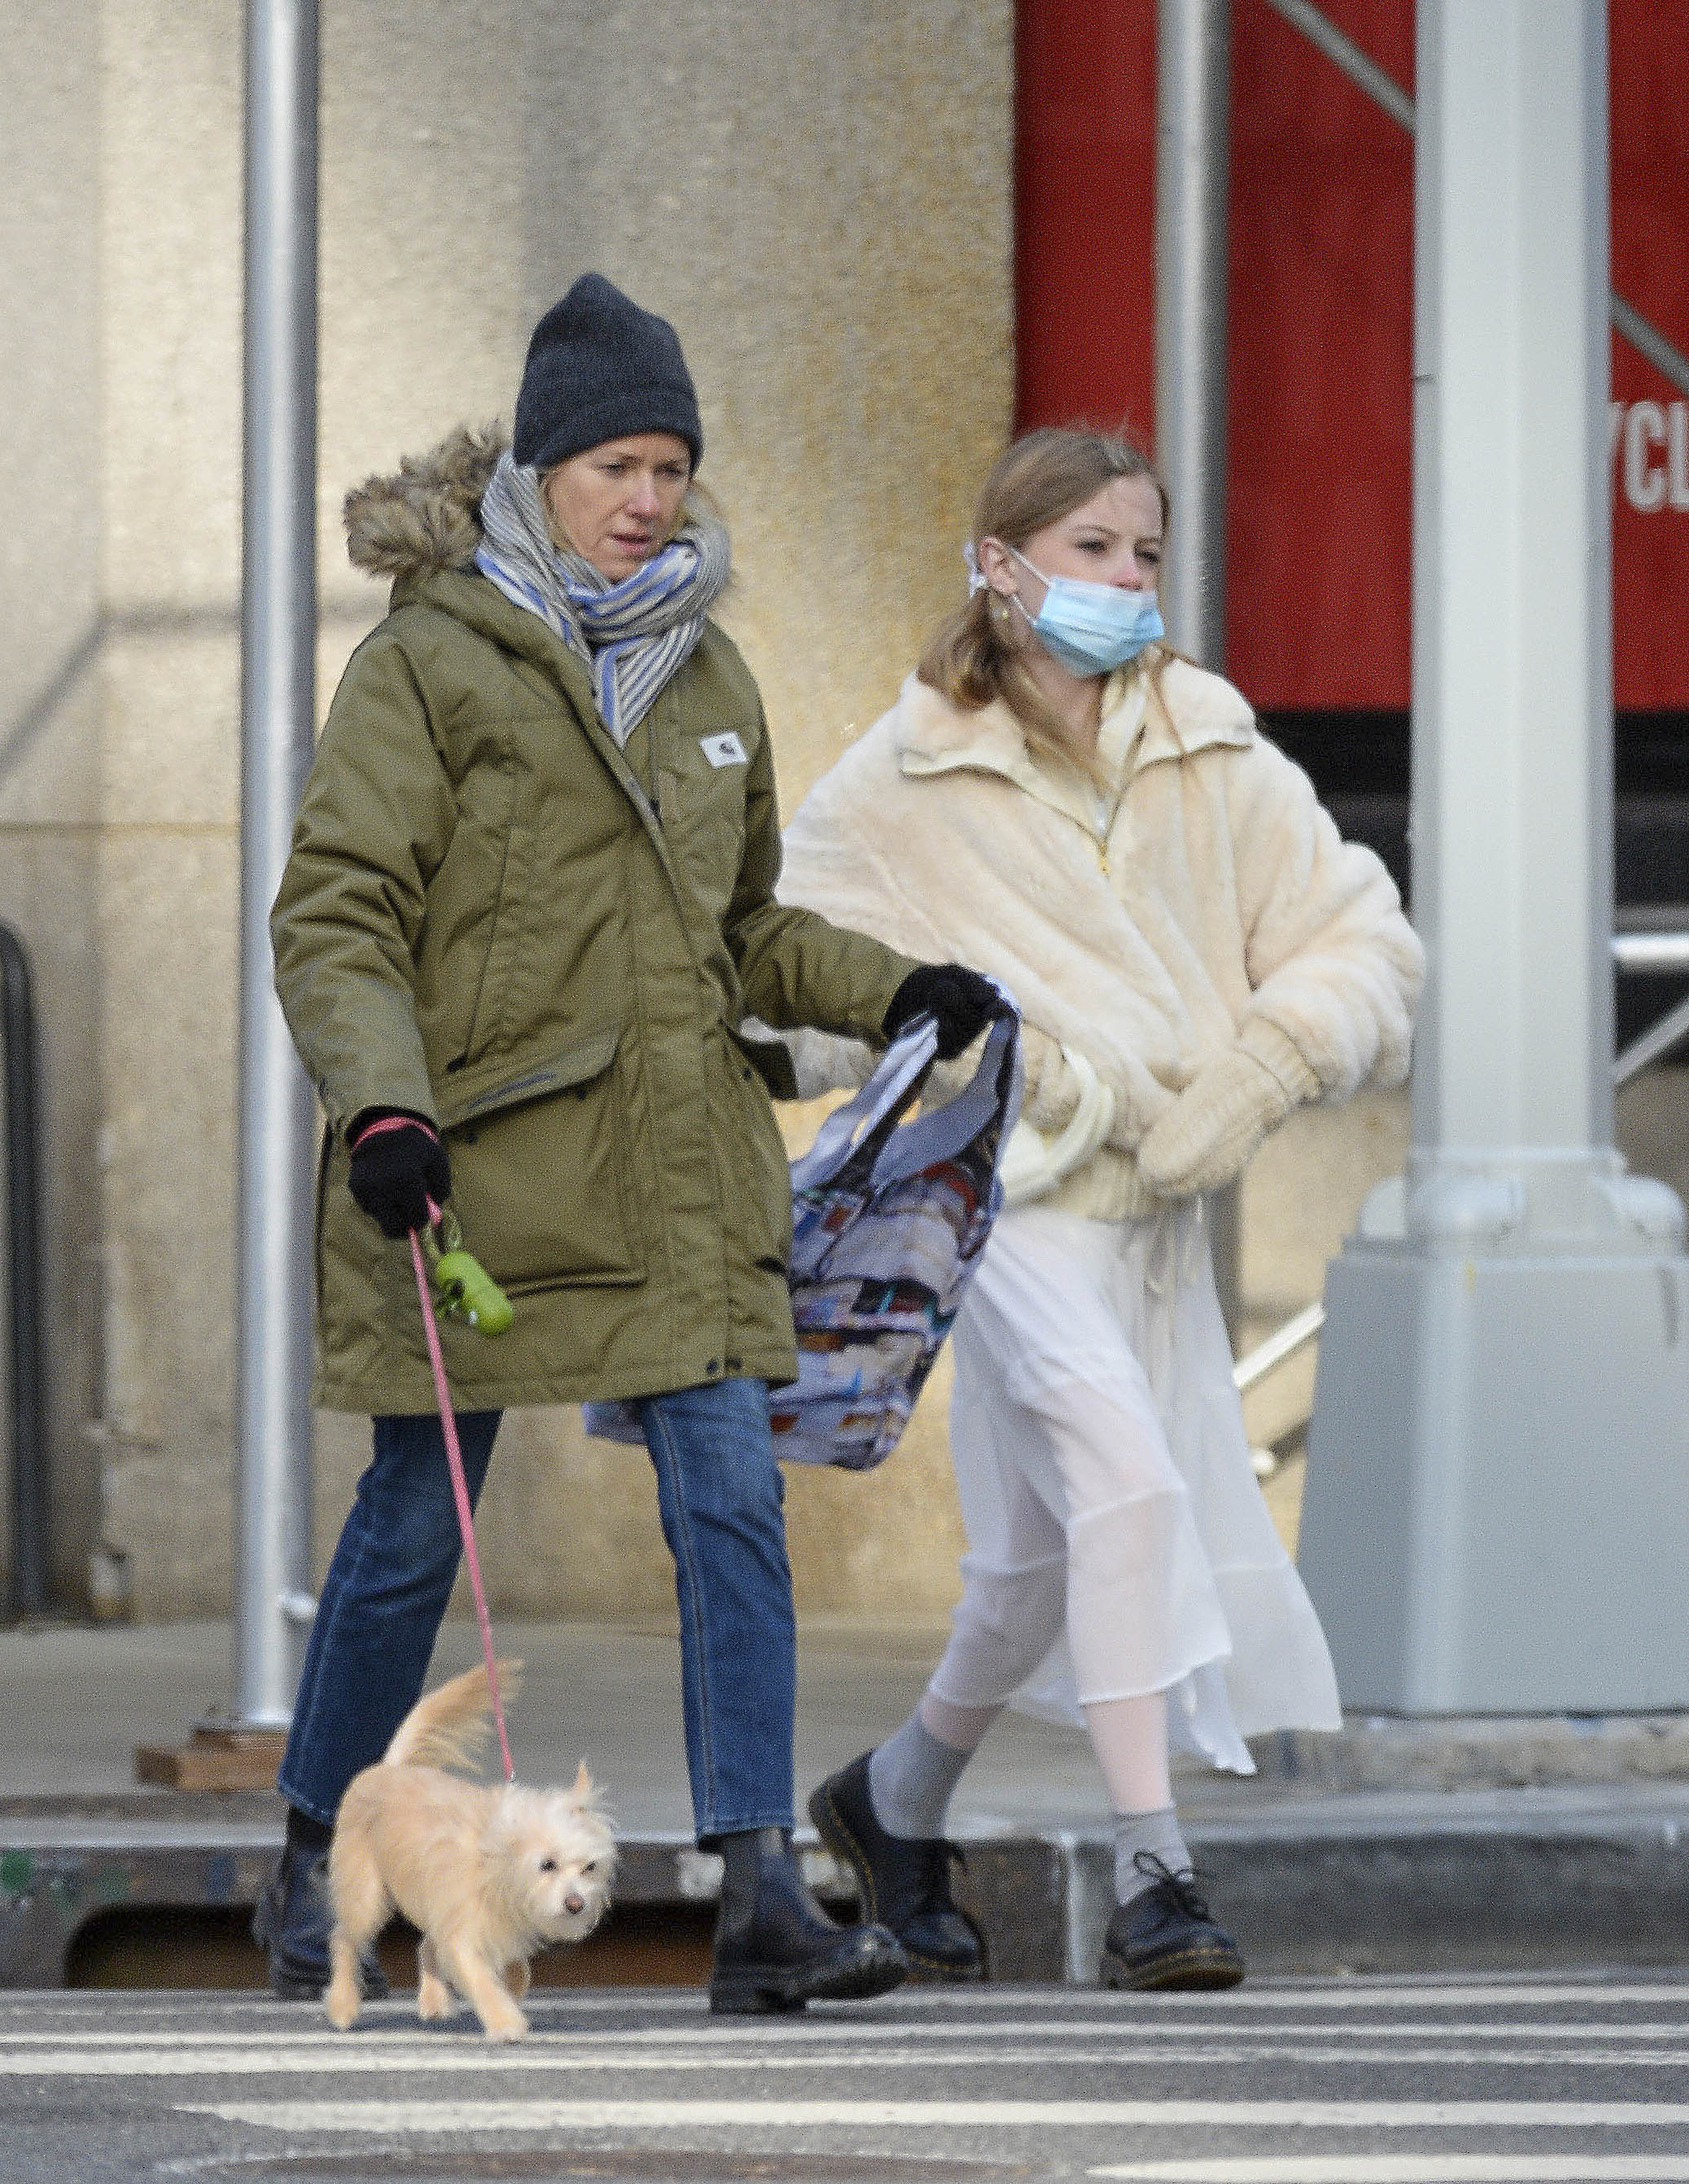 Paseo en familia. Naomi Watts salió a caminar con su hija por las calles de Nueva York y aprovechó la oportunidad para sacar a su perro, a quien llevó de la correa. Madre e hija le hicieron frente al frío con camperas abrigadas, además la actriz llevó bufanda y gorro de lana